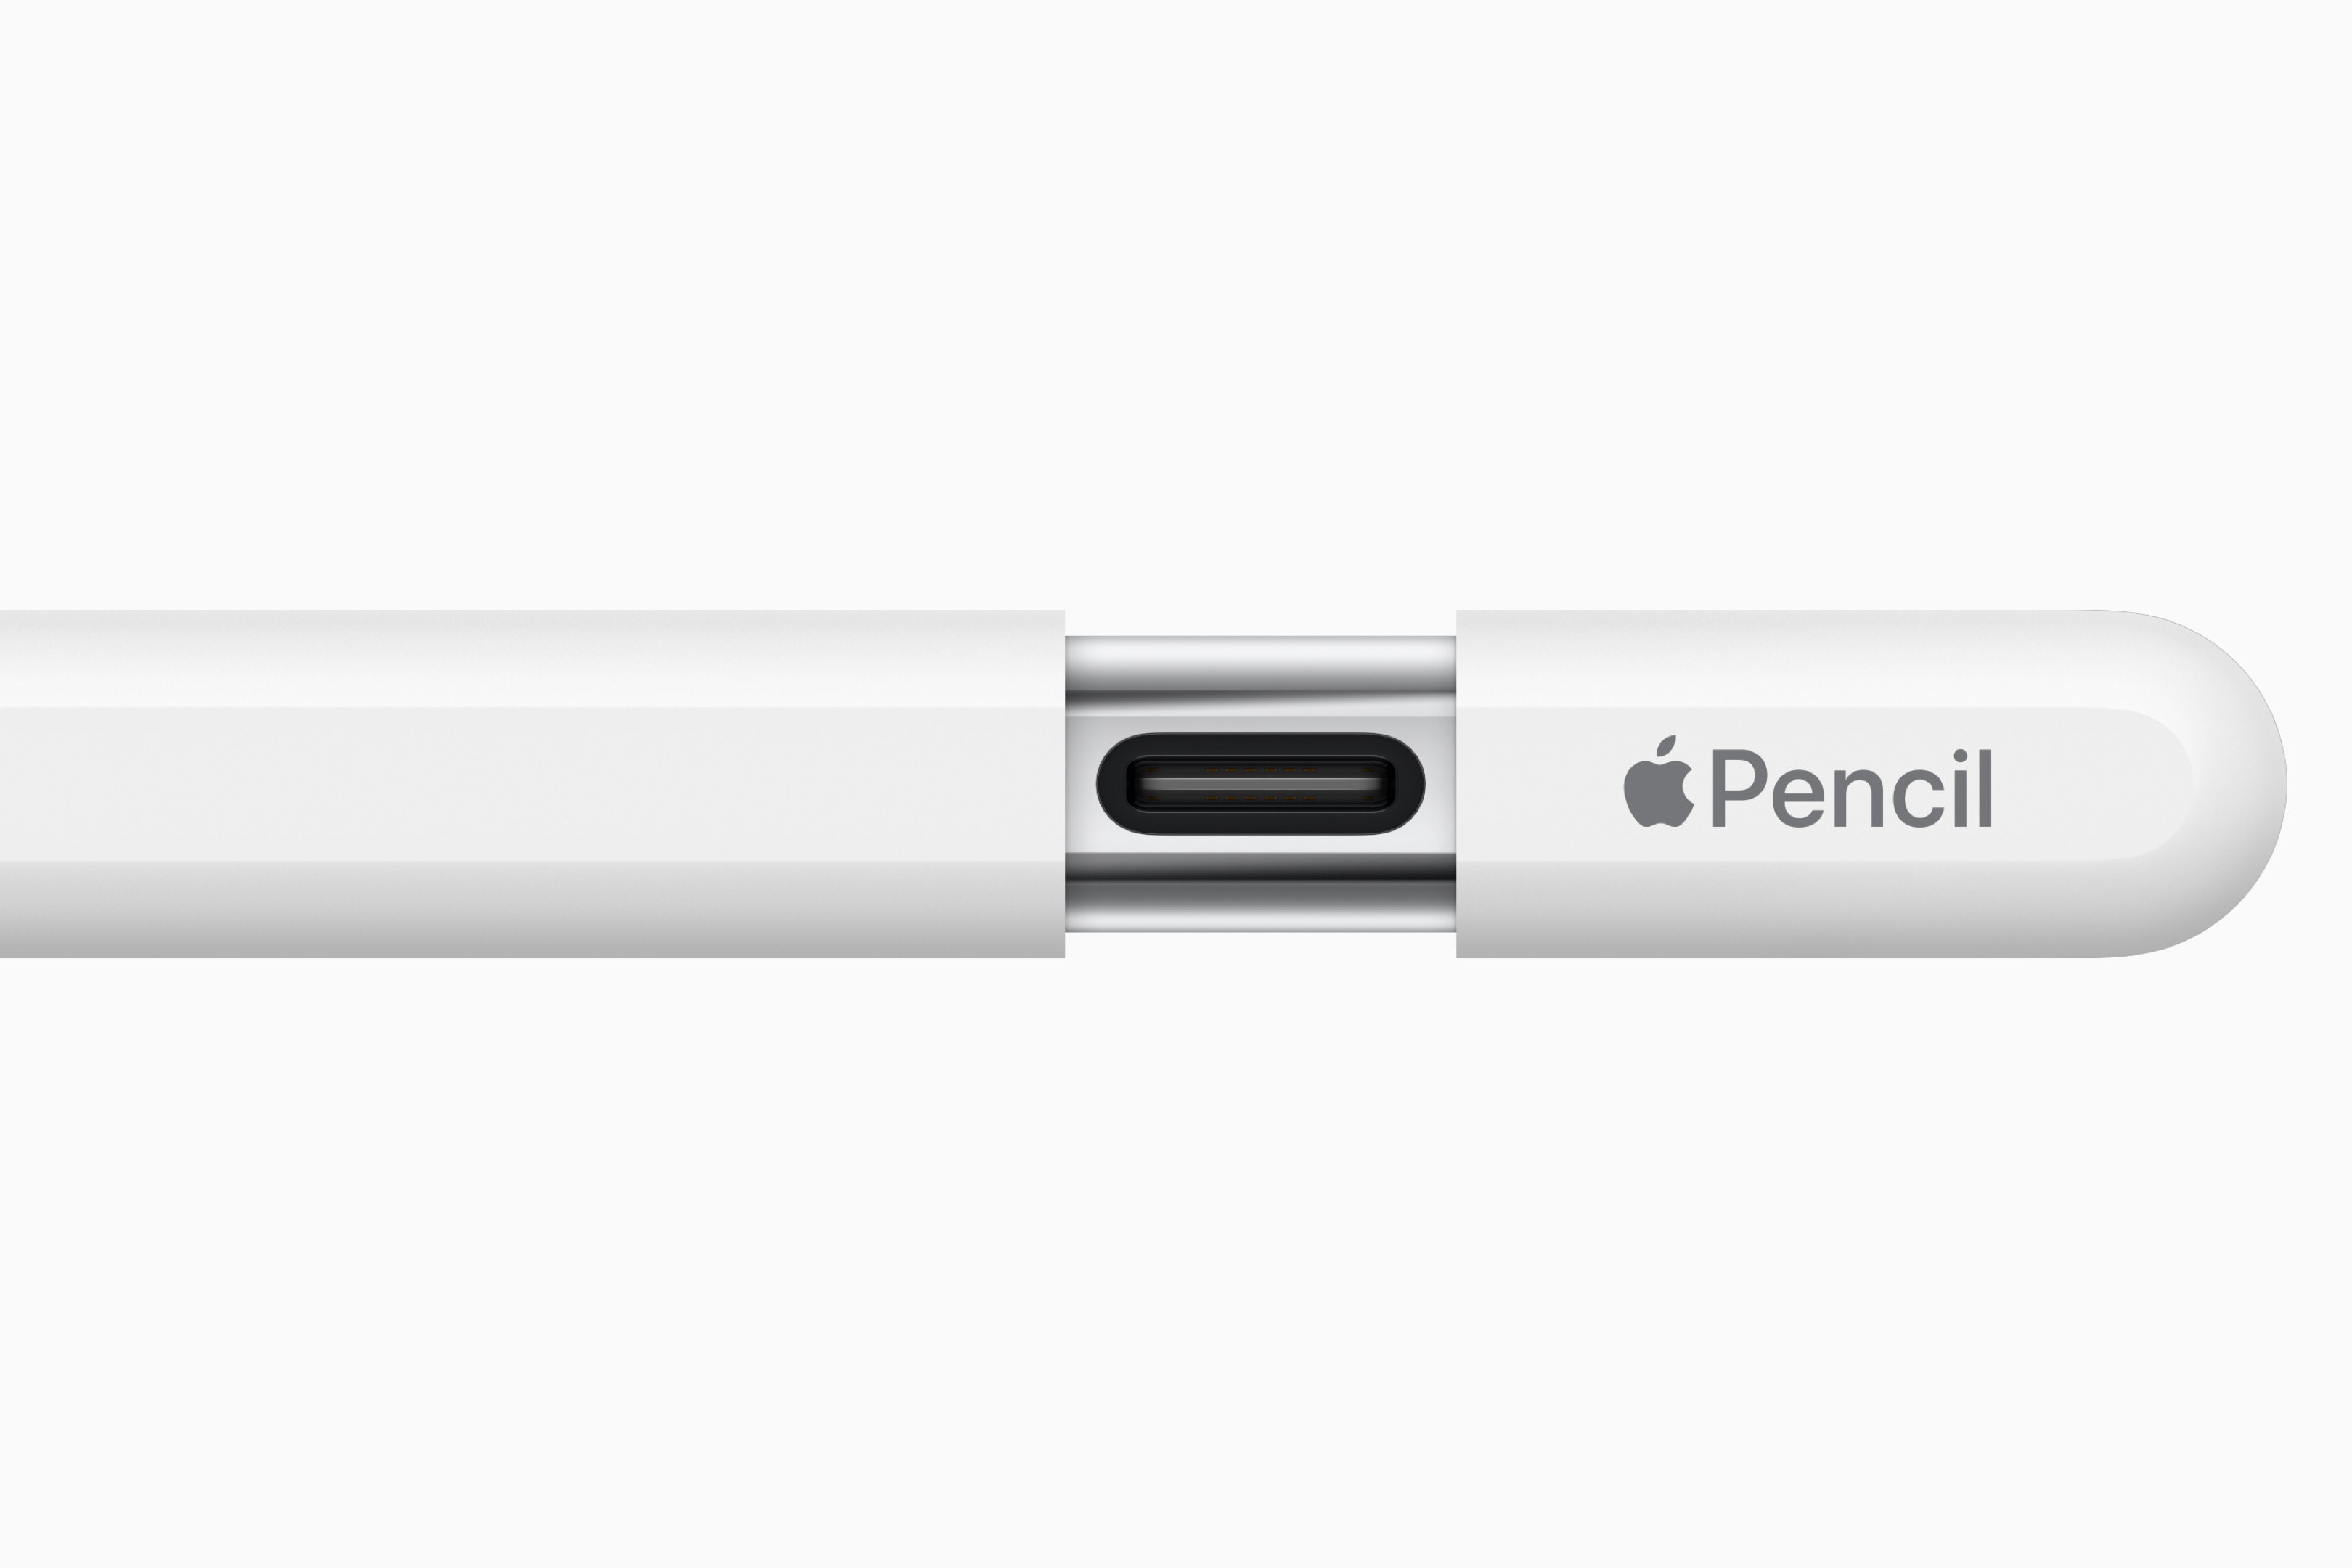 USB-C port on Apple Pencil